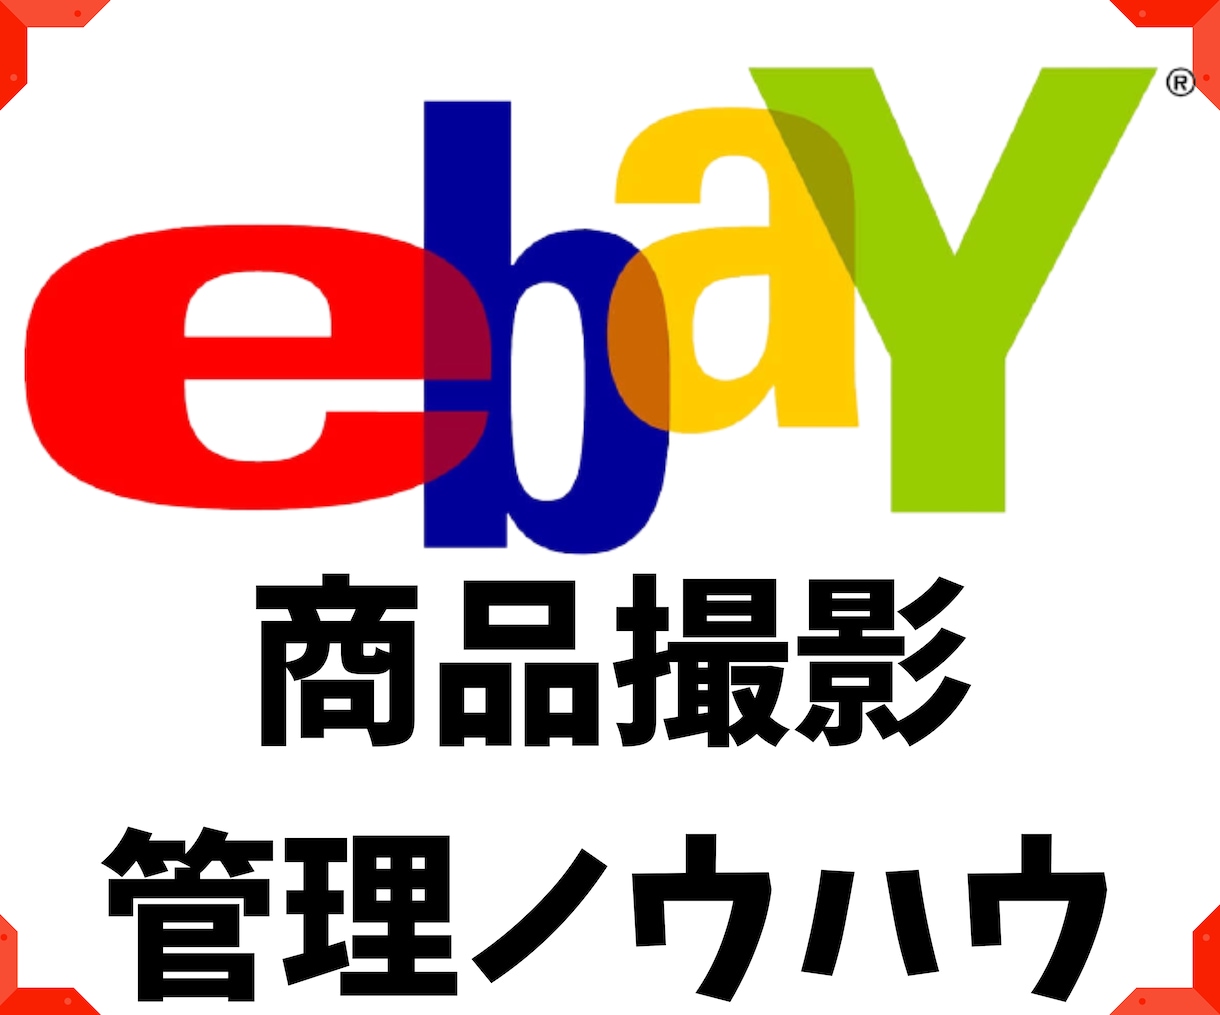 海外物販ビジネス大会議 Amazon 中国輸入eBay輸出 送料185円～ - ビジネス、経済